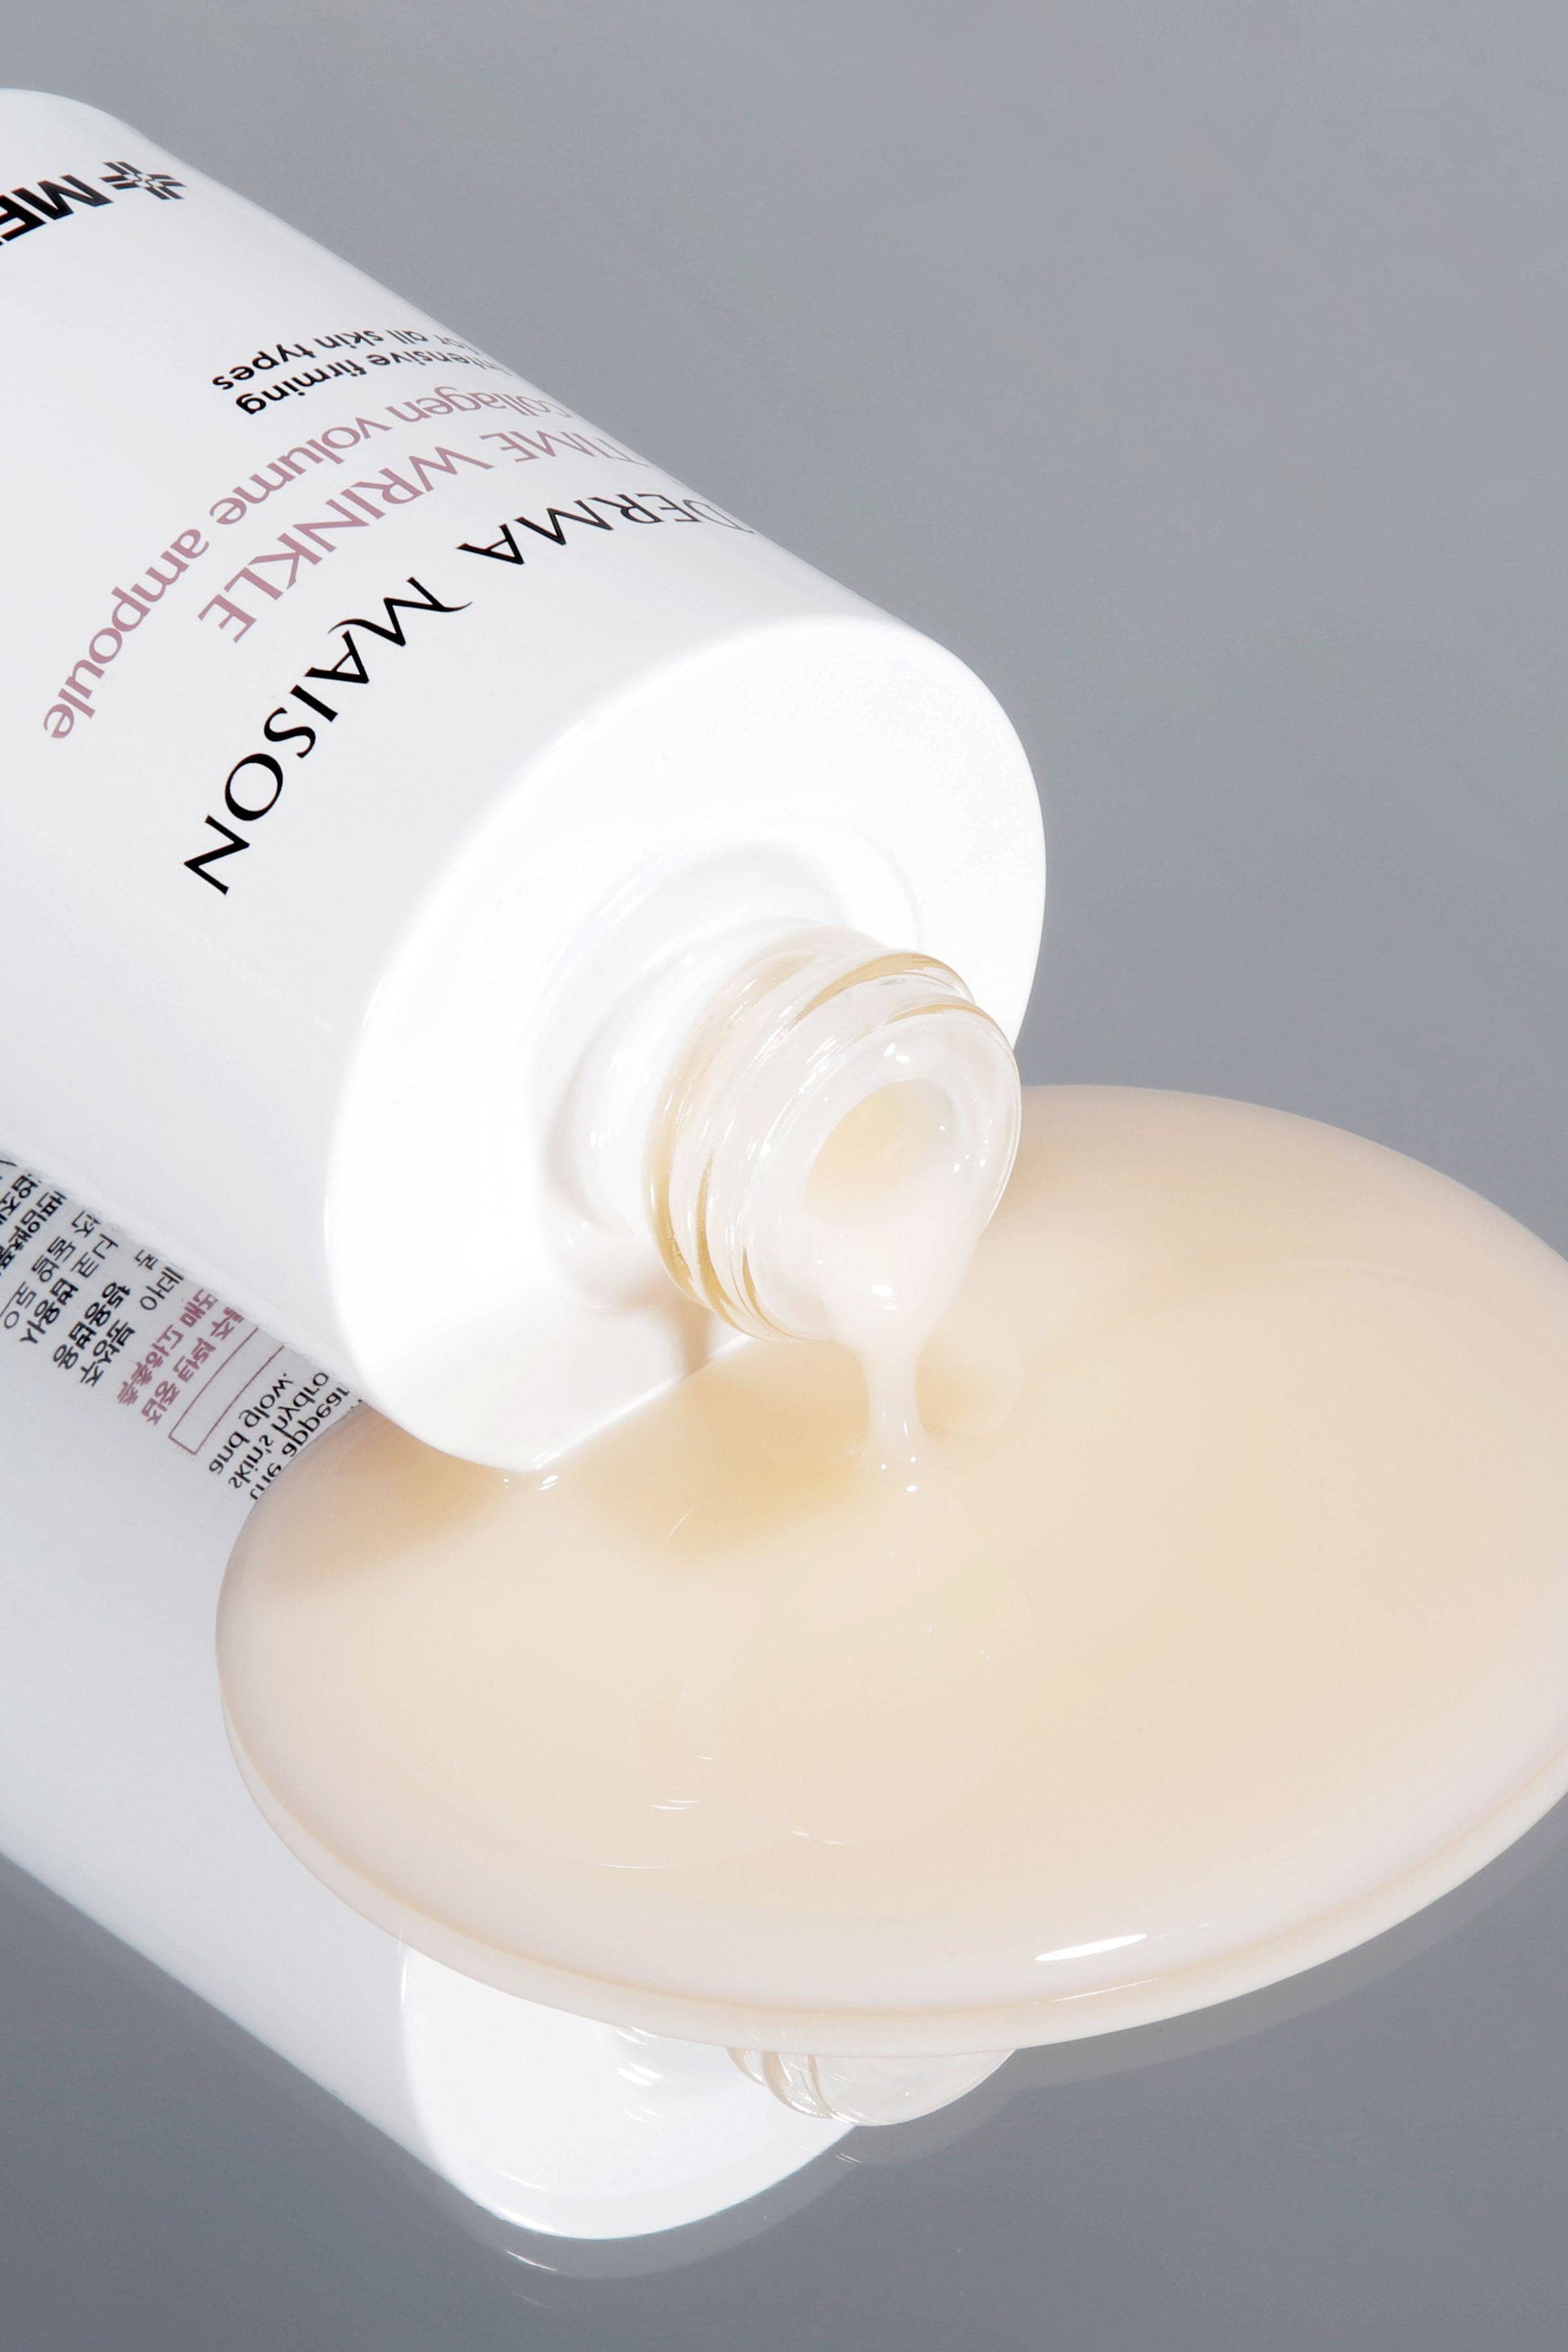 DERMA MAISONTime Wrinkle Collagen Volume Ampoule 100ml - La Cosmetique